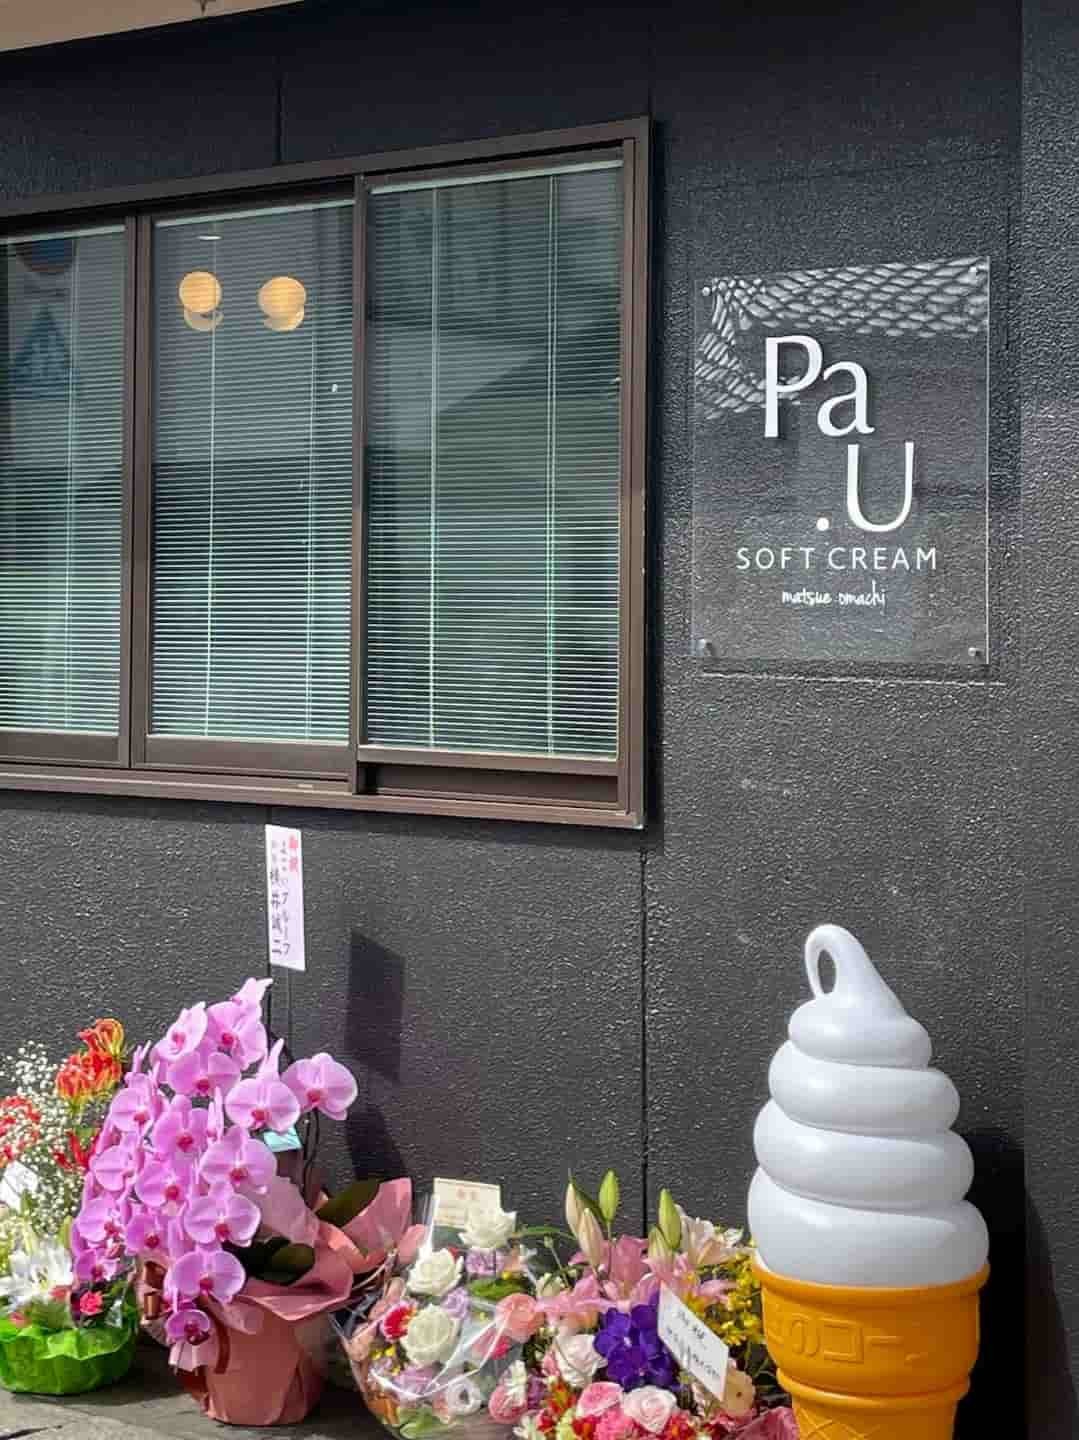 島根県松江市にオープンしたソフトクリーム屋『パウ』の外観